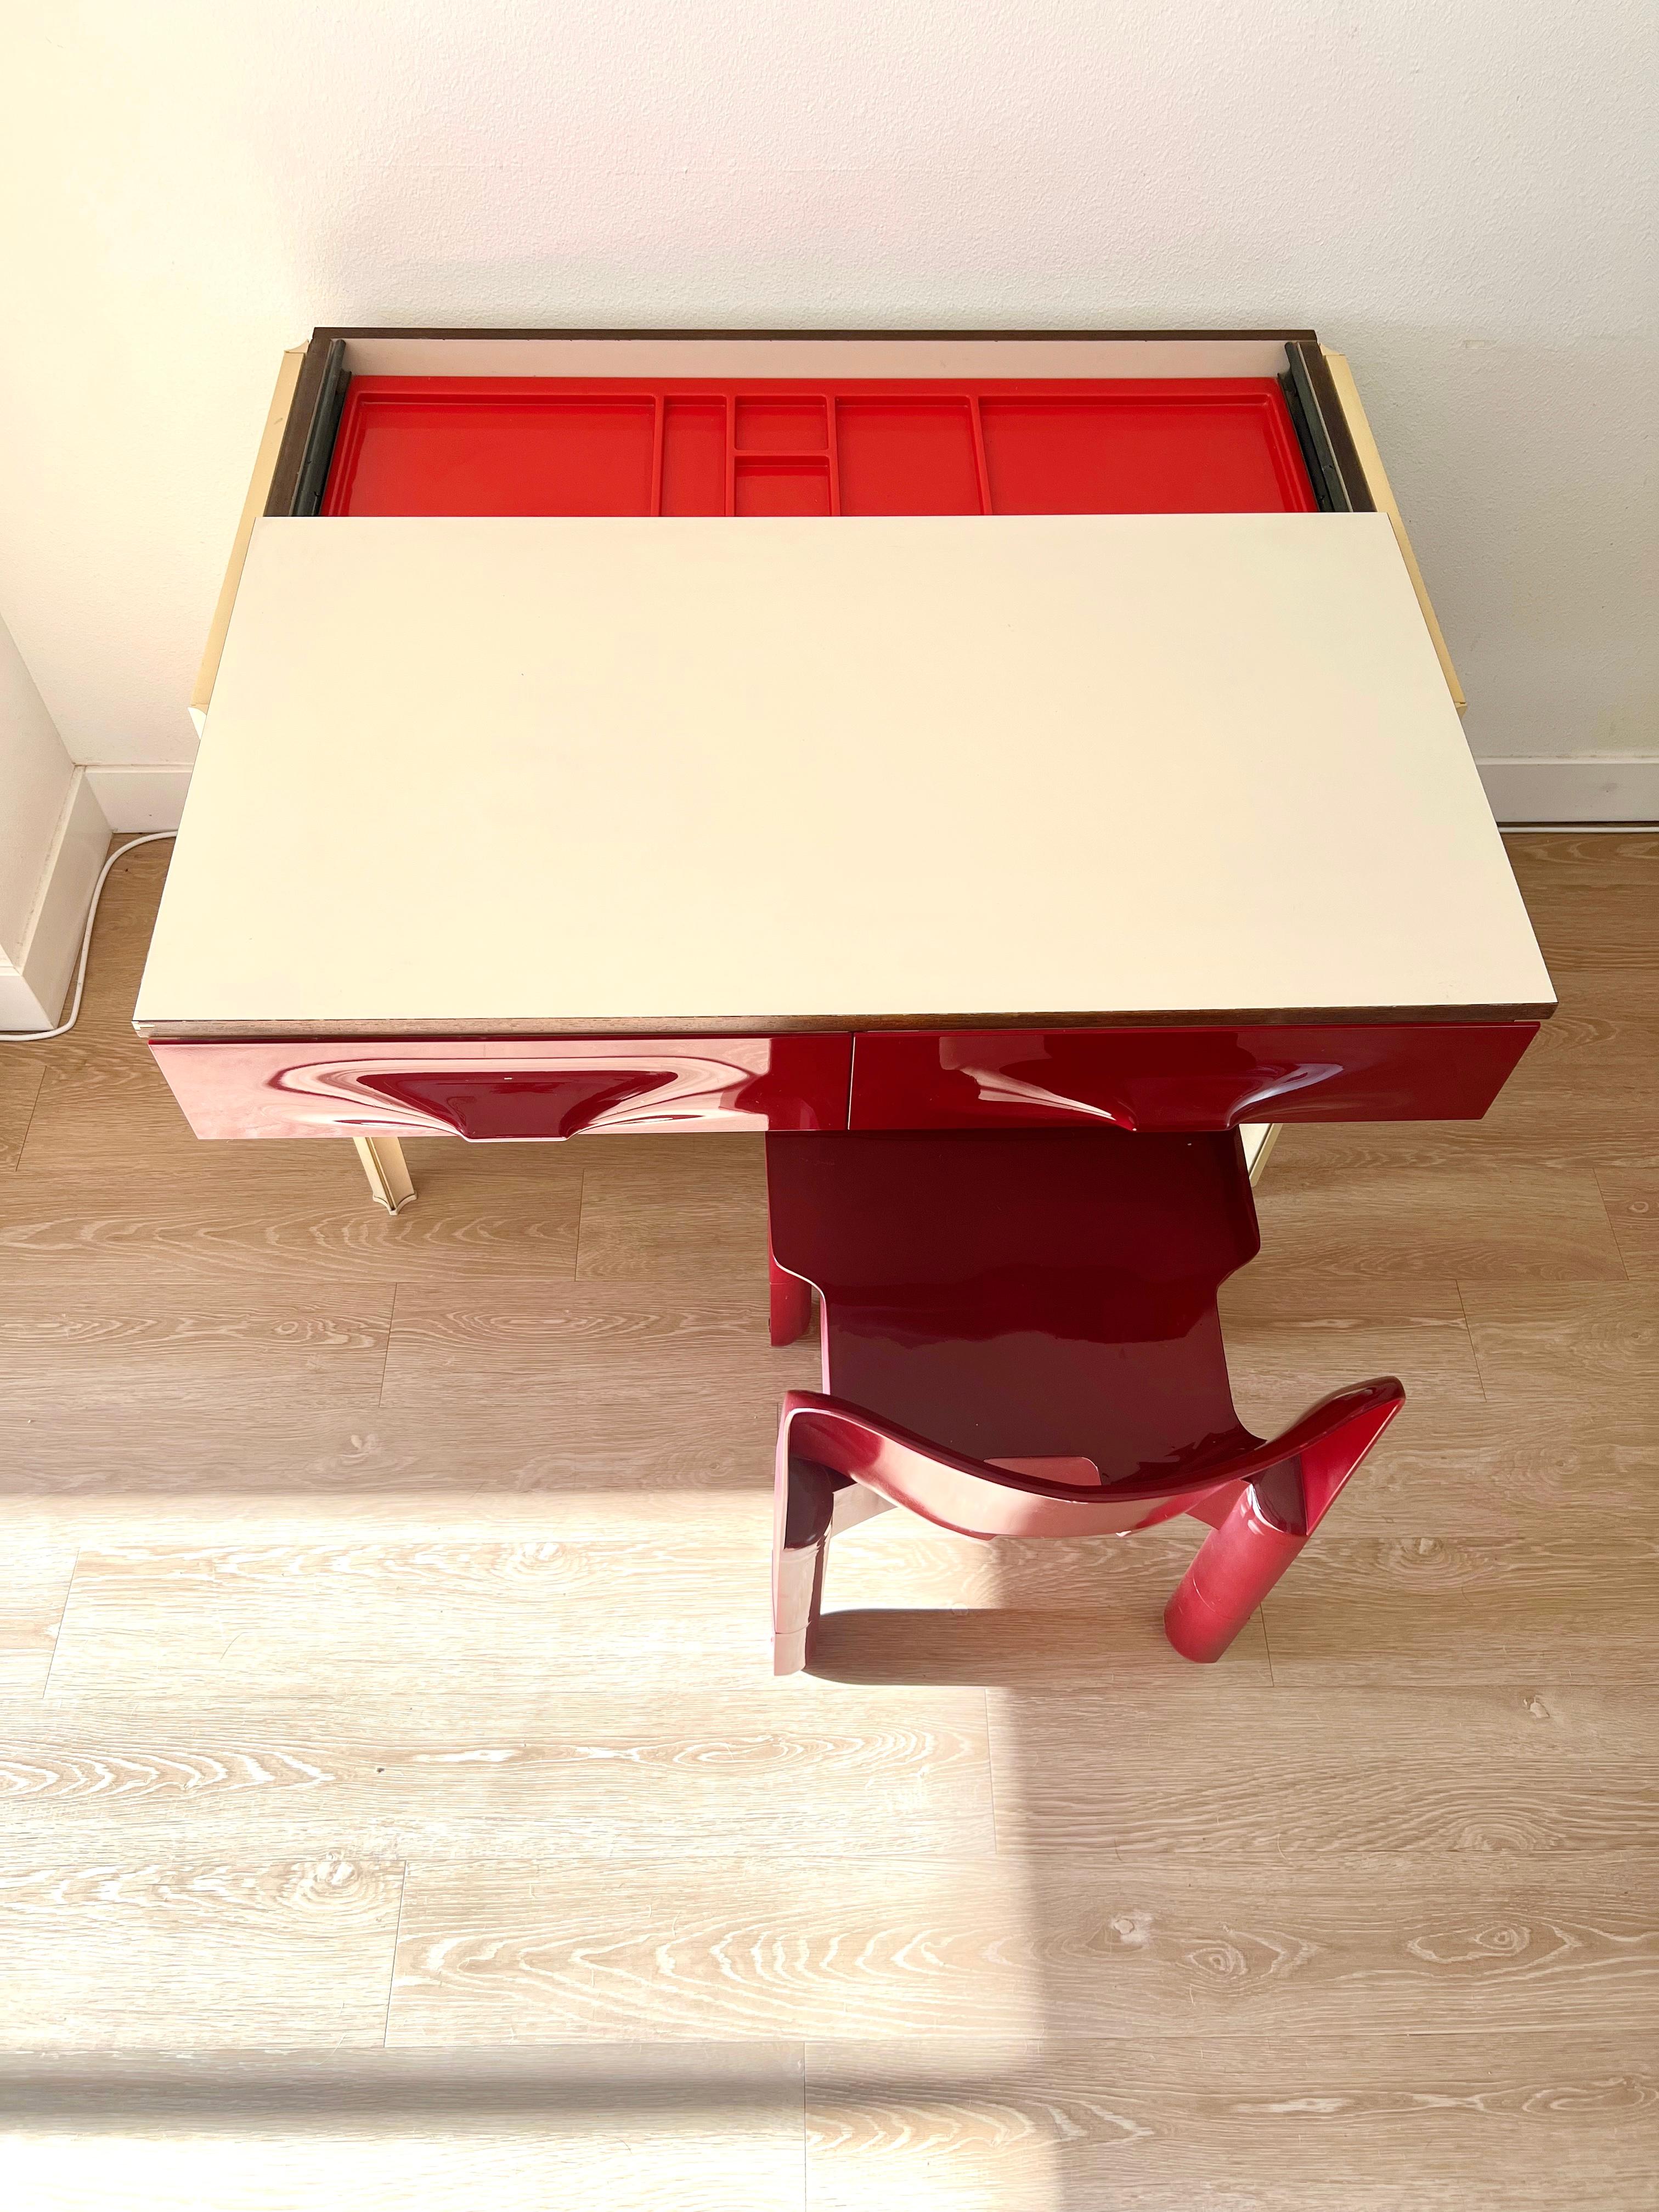 Der Schreibtisch Df-2000, entworfen von Raymond Loewy für Doubinsky Freres, ist kompakt, dynamisch und robust. Darunter befinden sich ein höhenverstellbares Regalfach und einige große Schubladen mit viel Stauraum. Das obere Fach des Schreibtisches